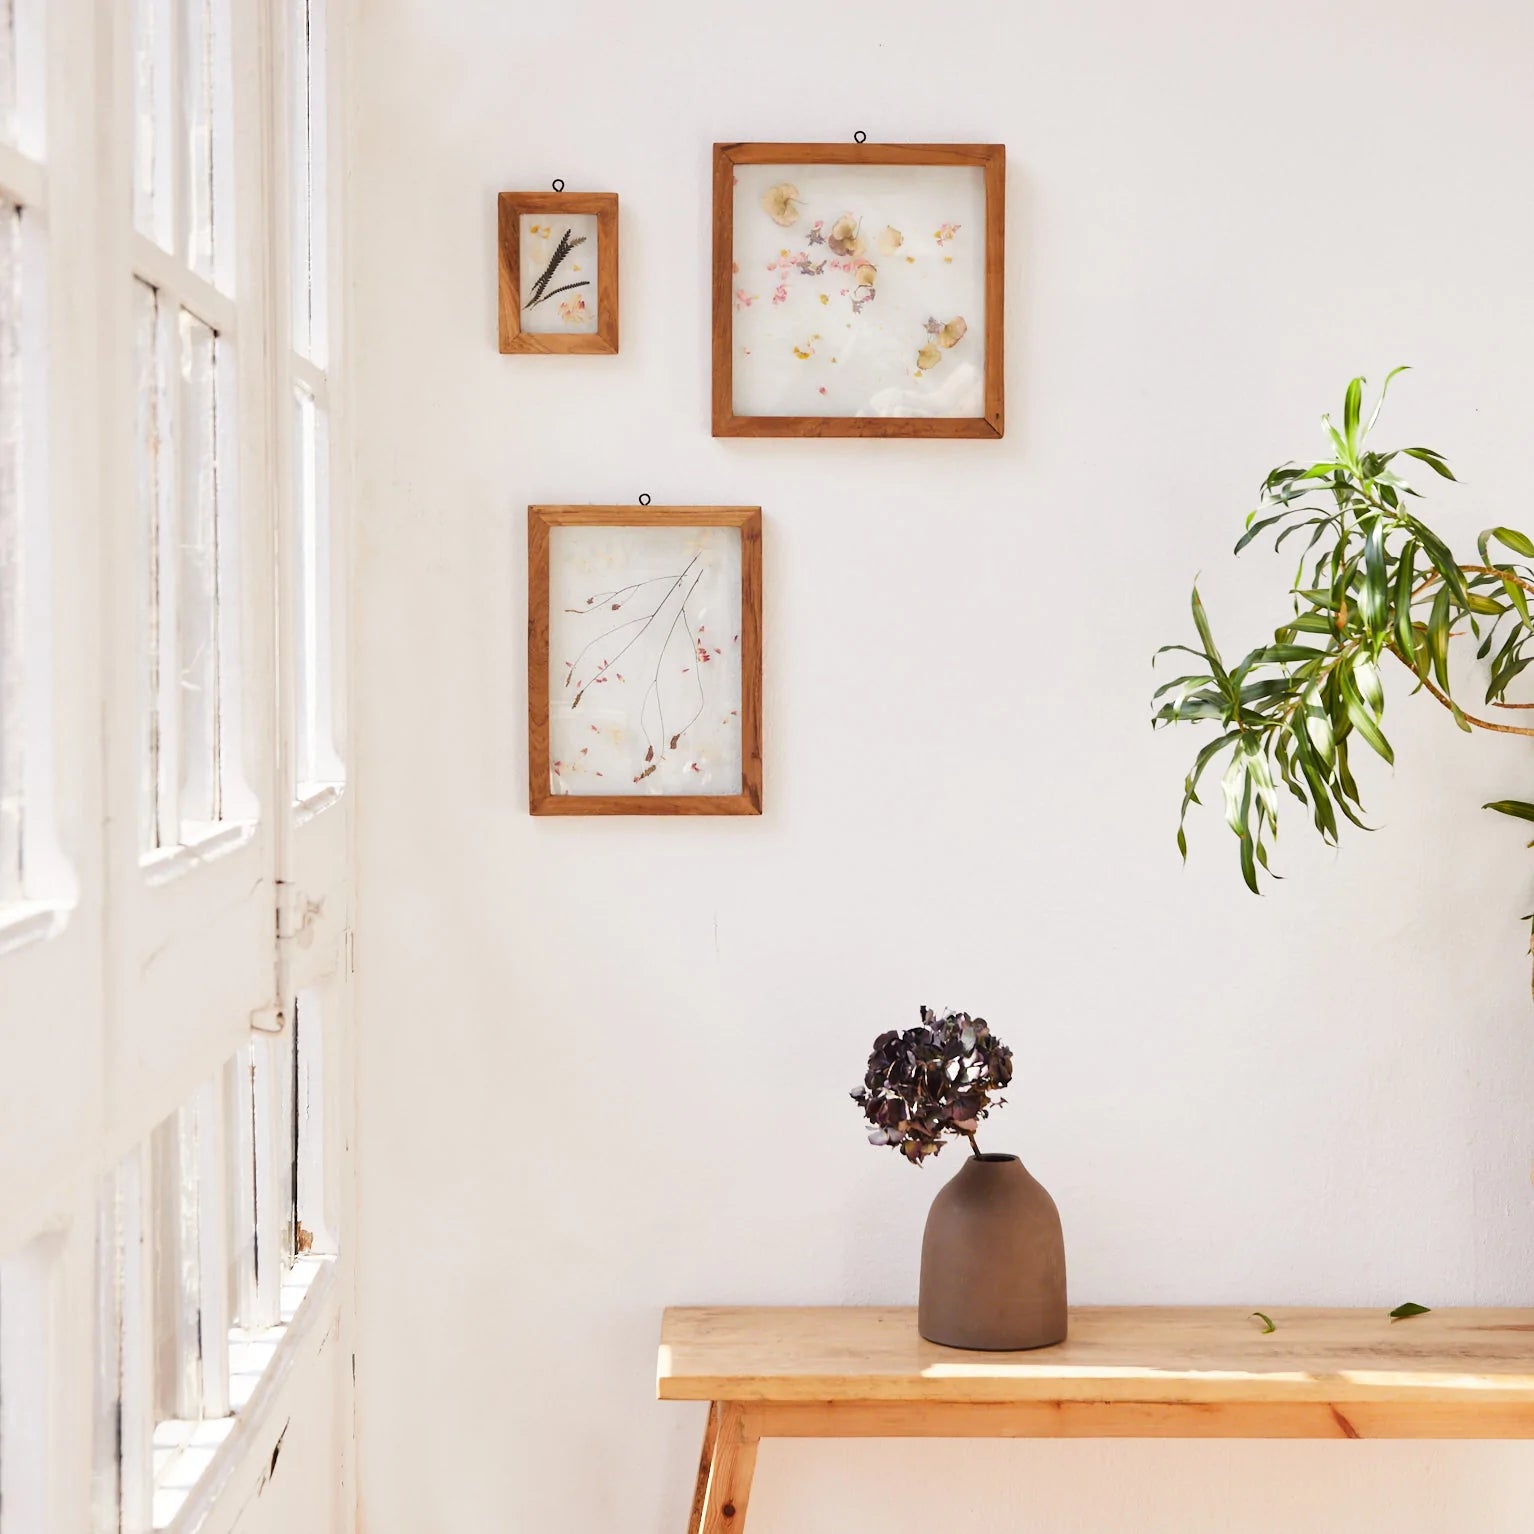 Cómo decorar una pared con madera? 4 ideas para renovar tu hogar